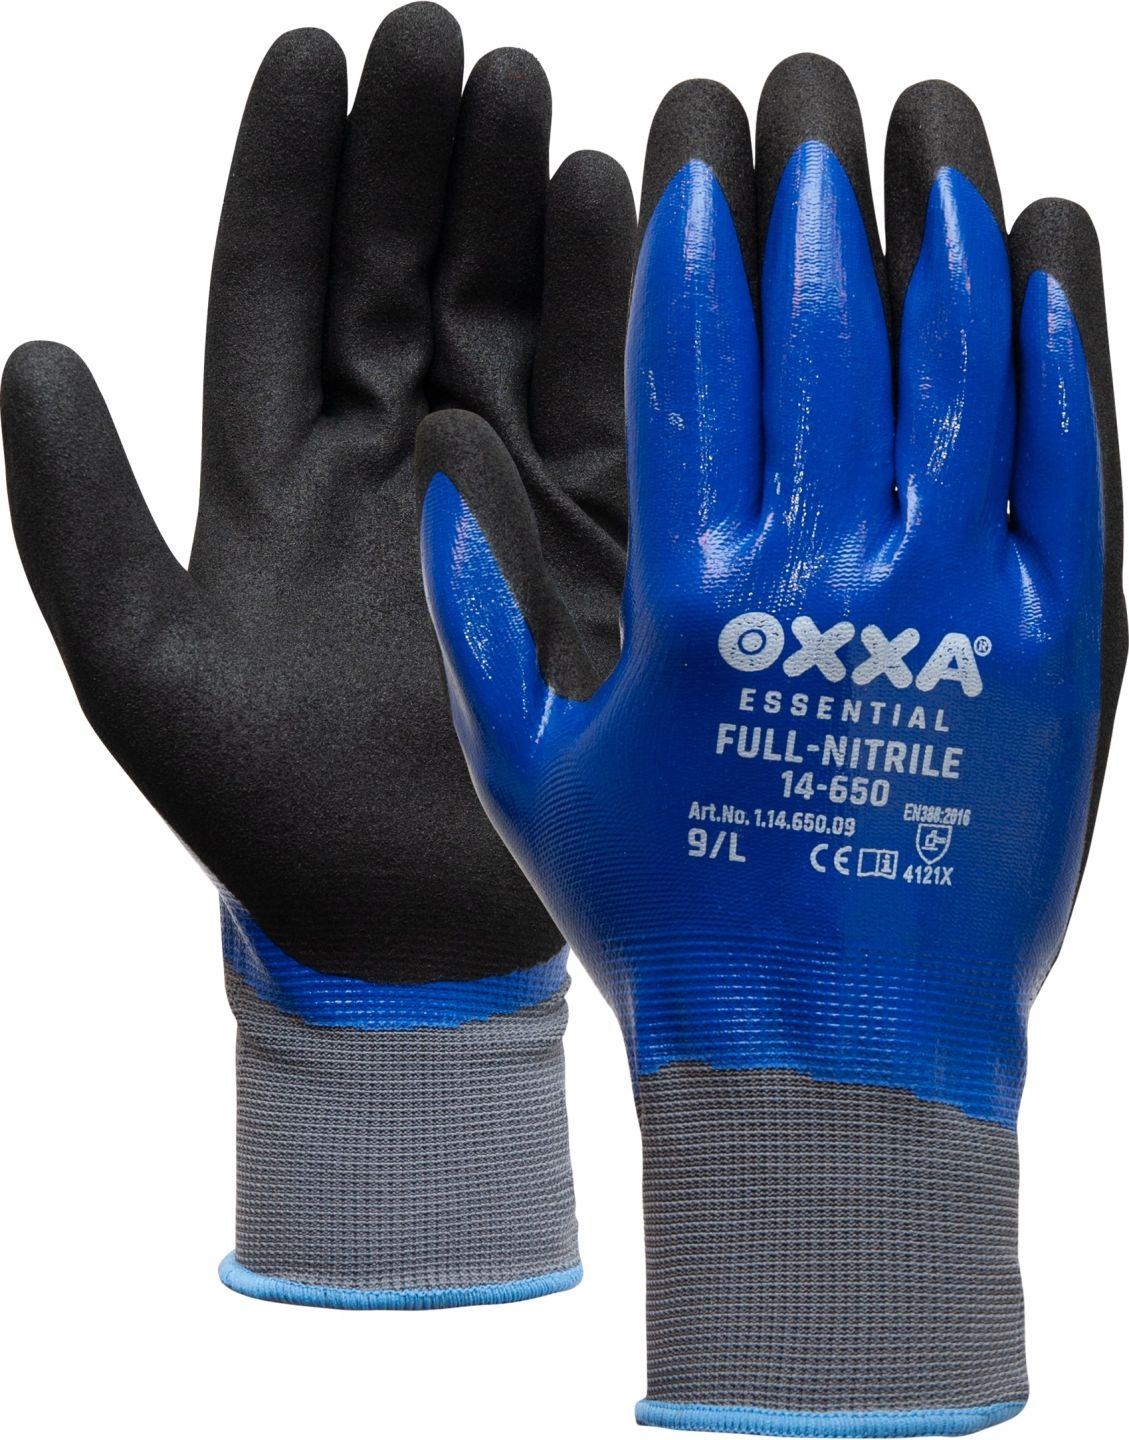 OXXA Full-Nitrile 14-650 werkhandschoenen